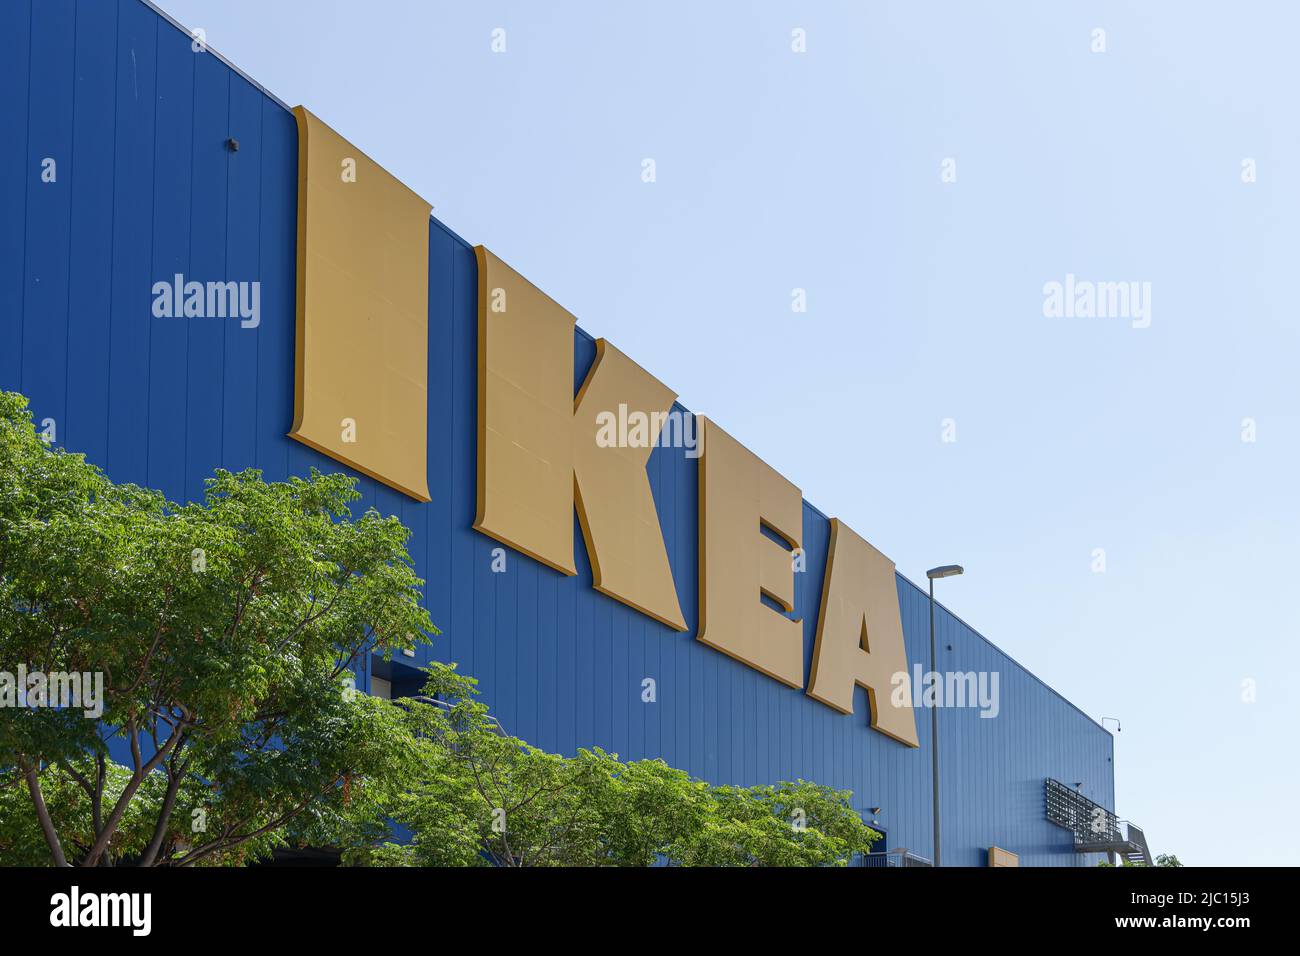 ALFAFAR, SPAGNA - 06 GIUGNO 2022: IKEA è una multinazionale svedese che progetta e vende mobili, elettrodomestici da cucina e accessori per la casa Foto Stock